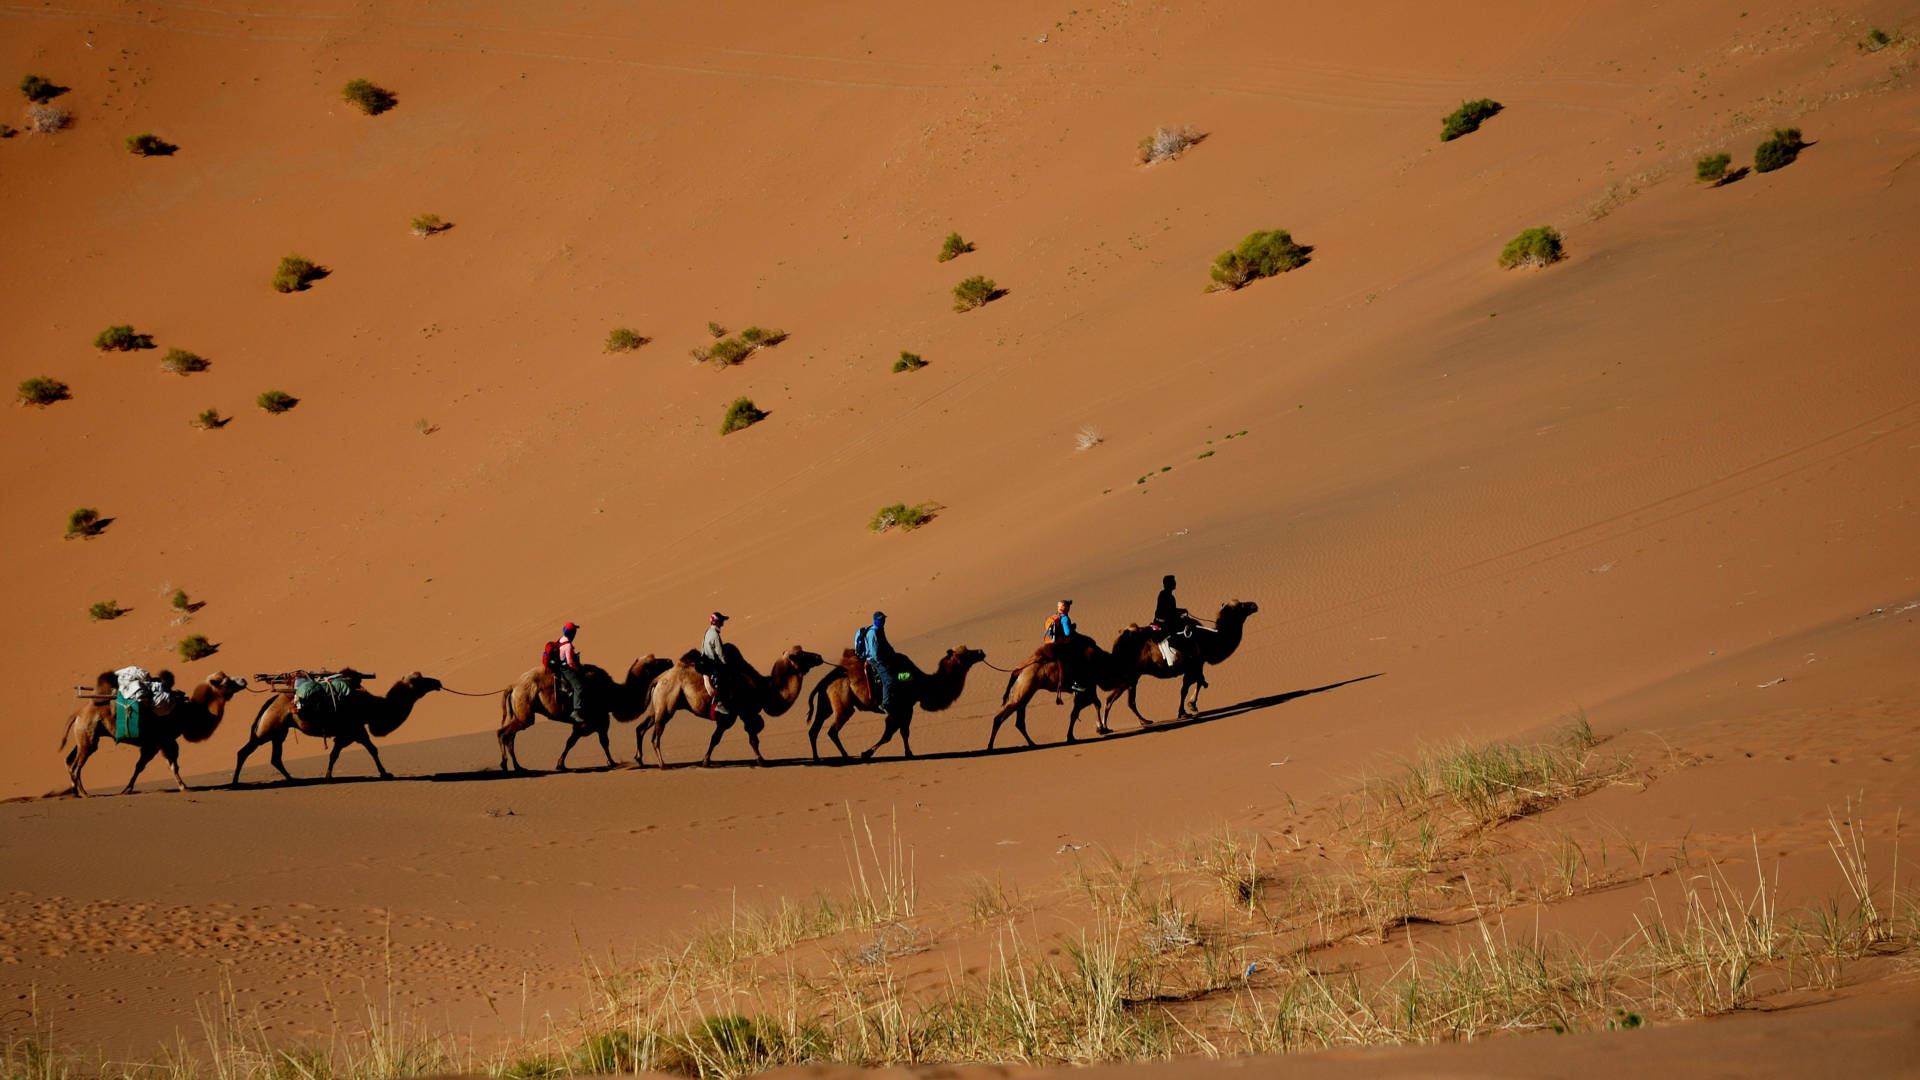 Custom Travel Planner Network-Mongolia-Camel Caravan in Gobi Desert